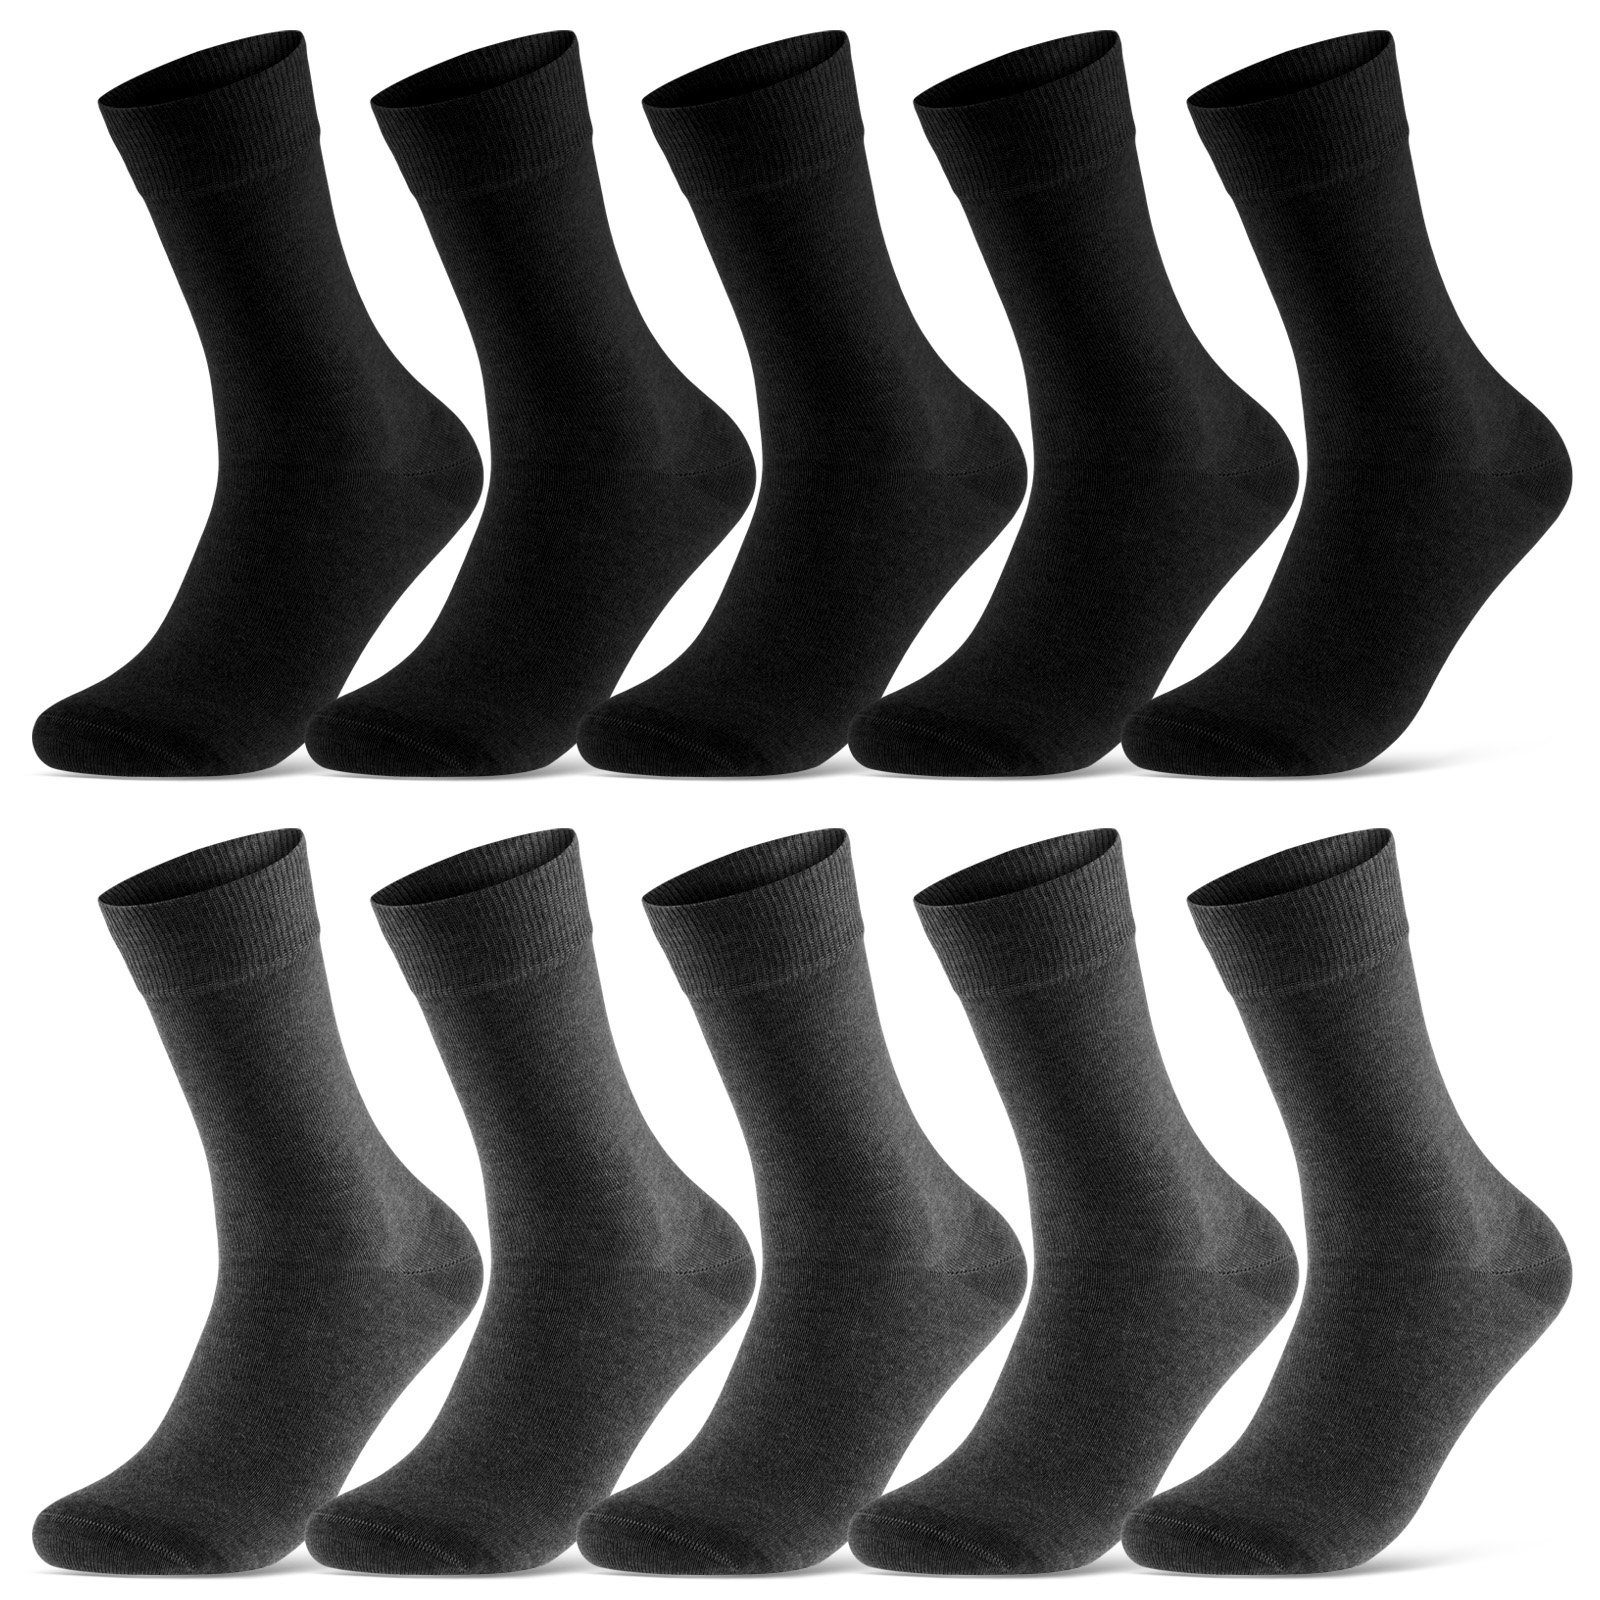 sockenkauf24 Socken 10 Paar Damen & Herren Socken Business Socken Baumwolle (Schwarz/Anthra, 39-42) mit Komfortbund (Basicline) - 70201T